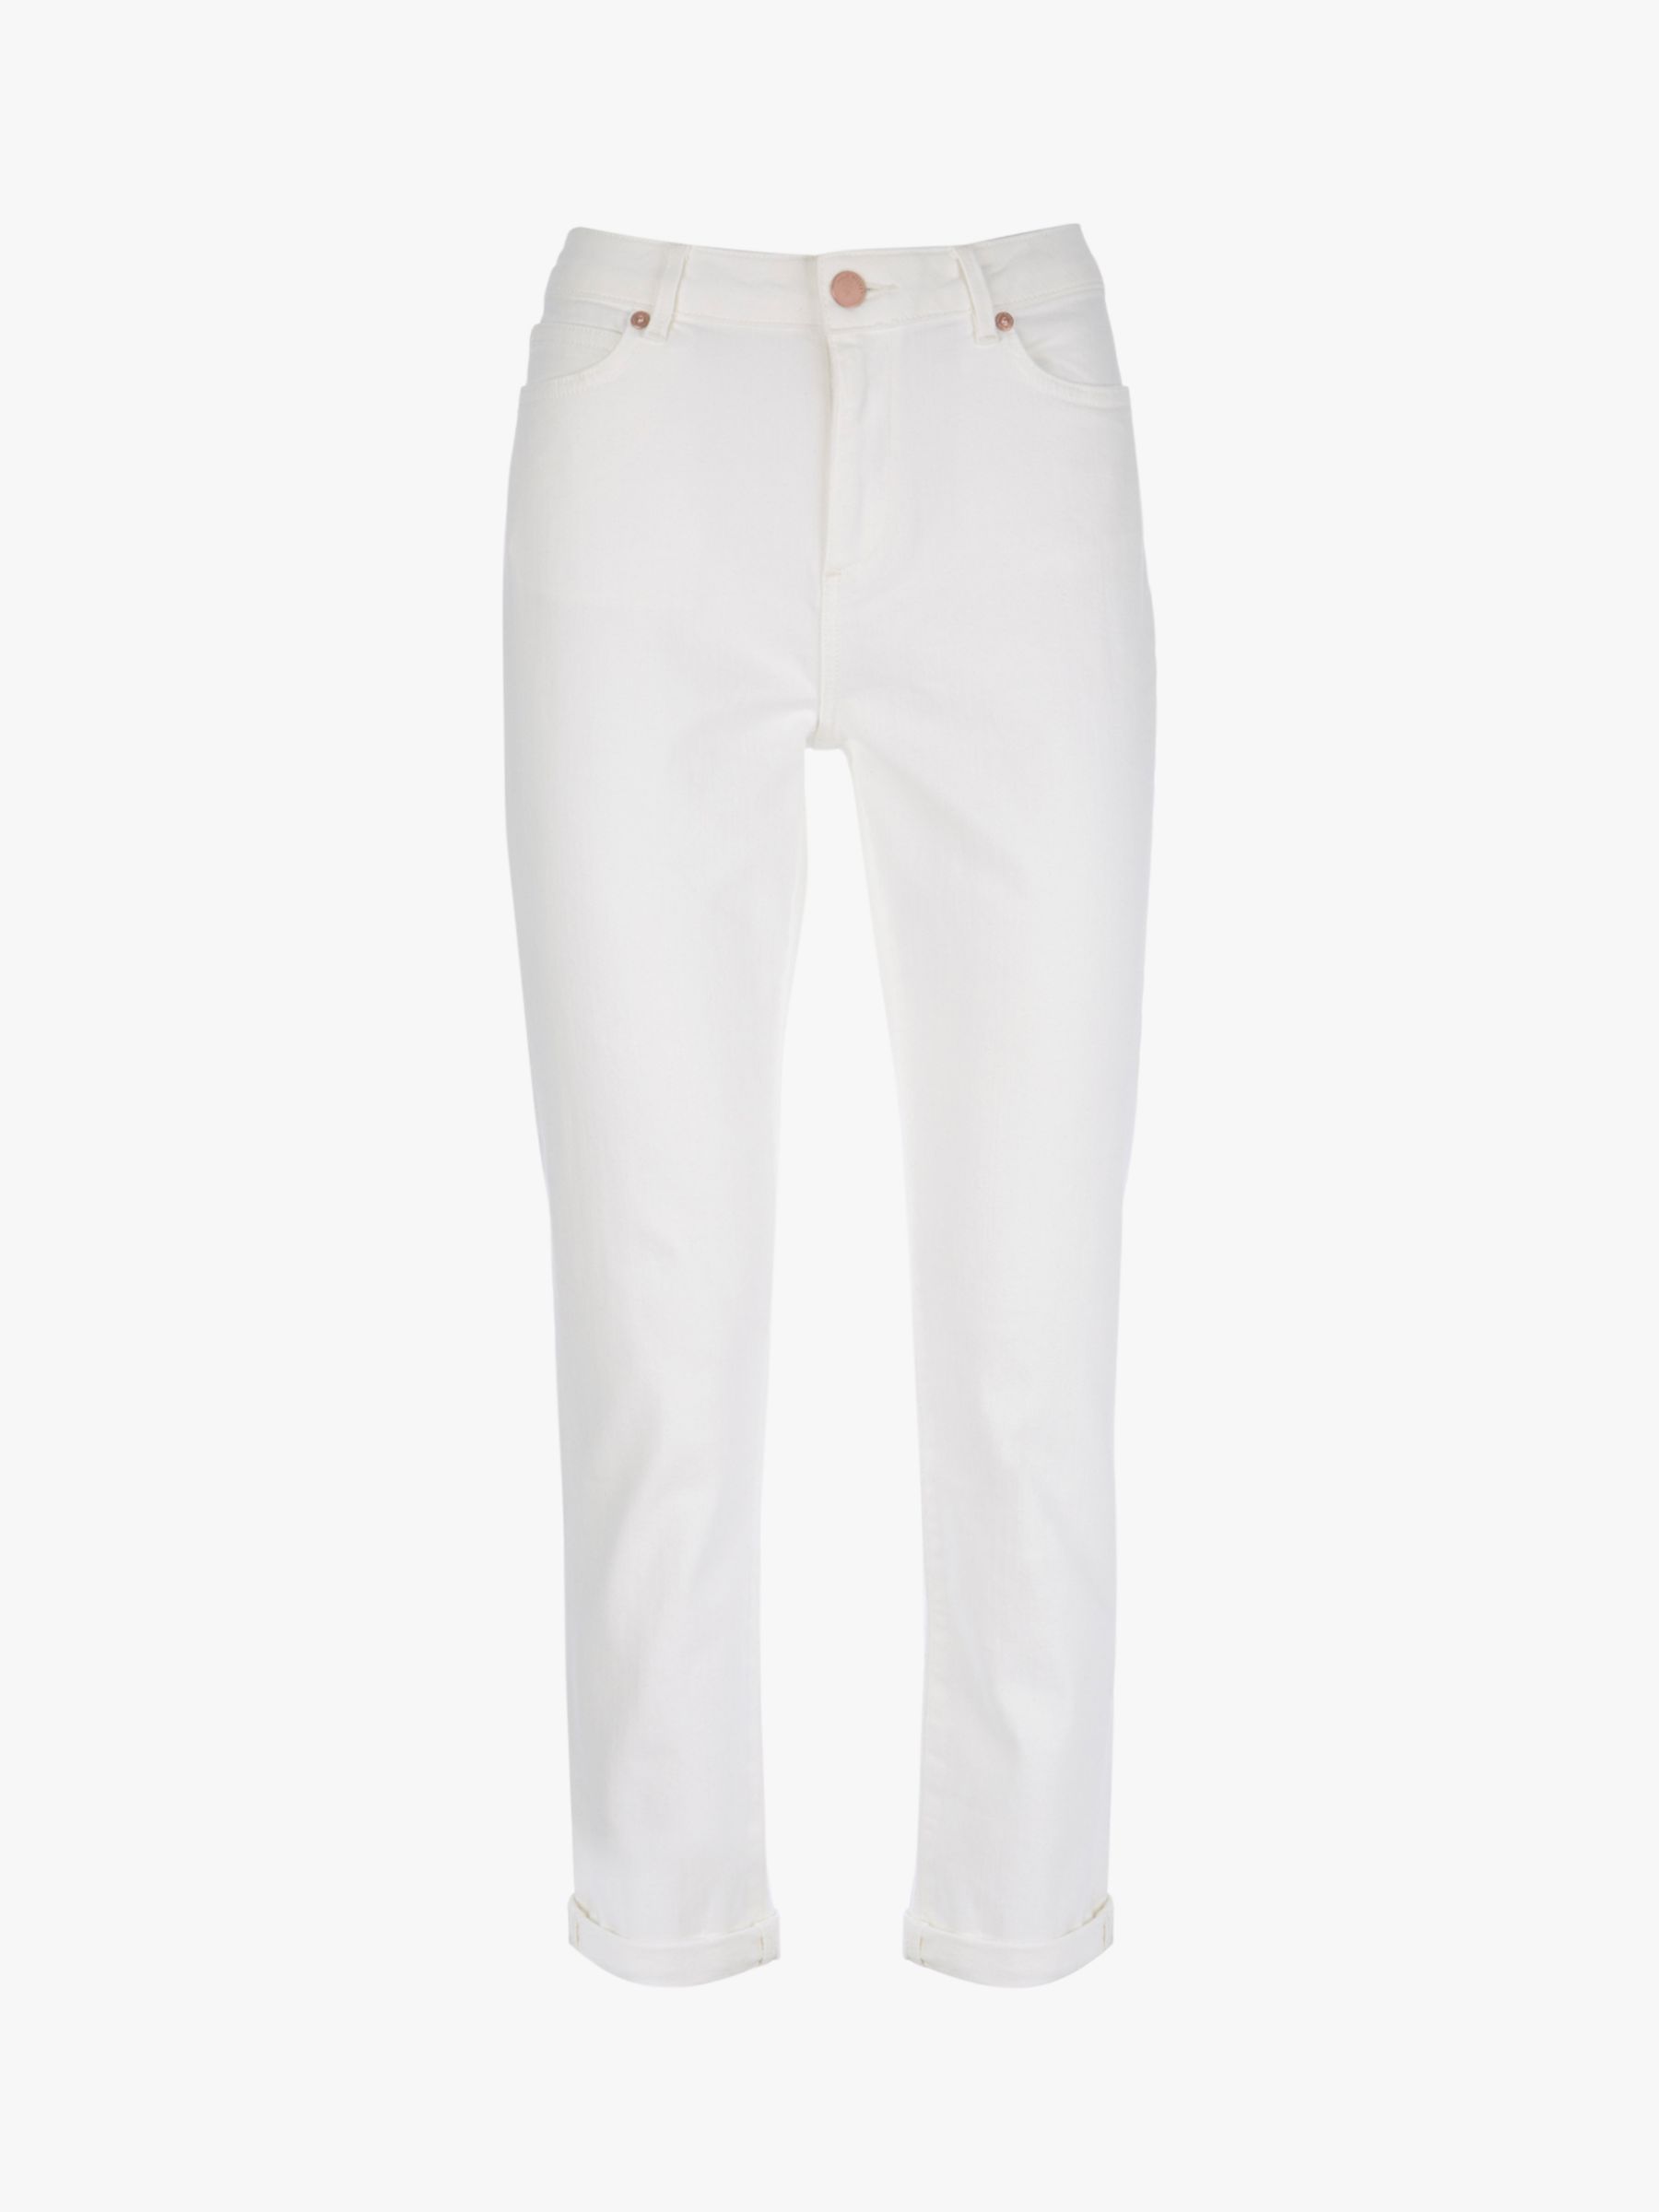 mint velvet white jeans